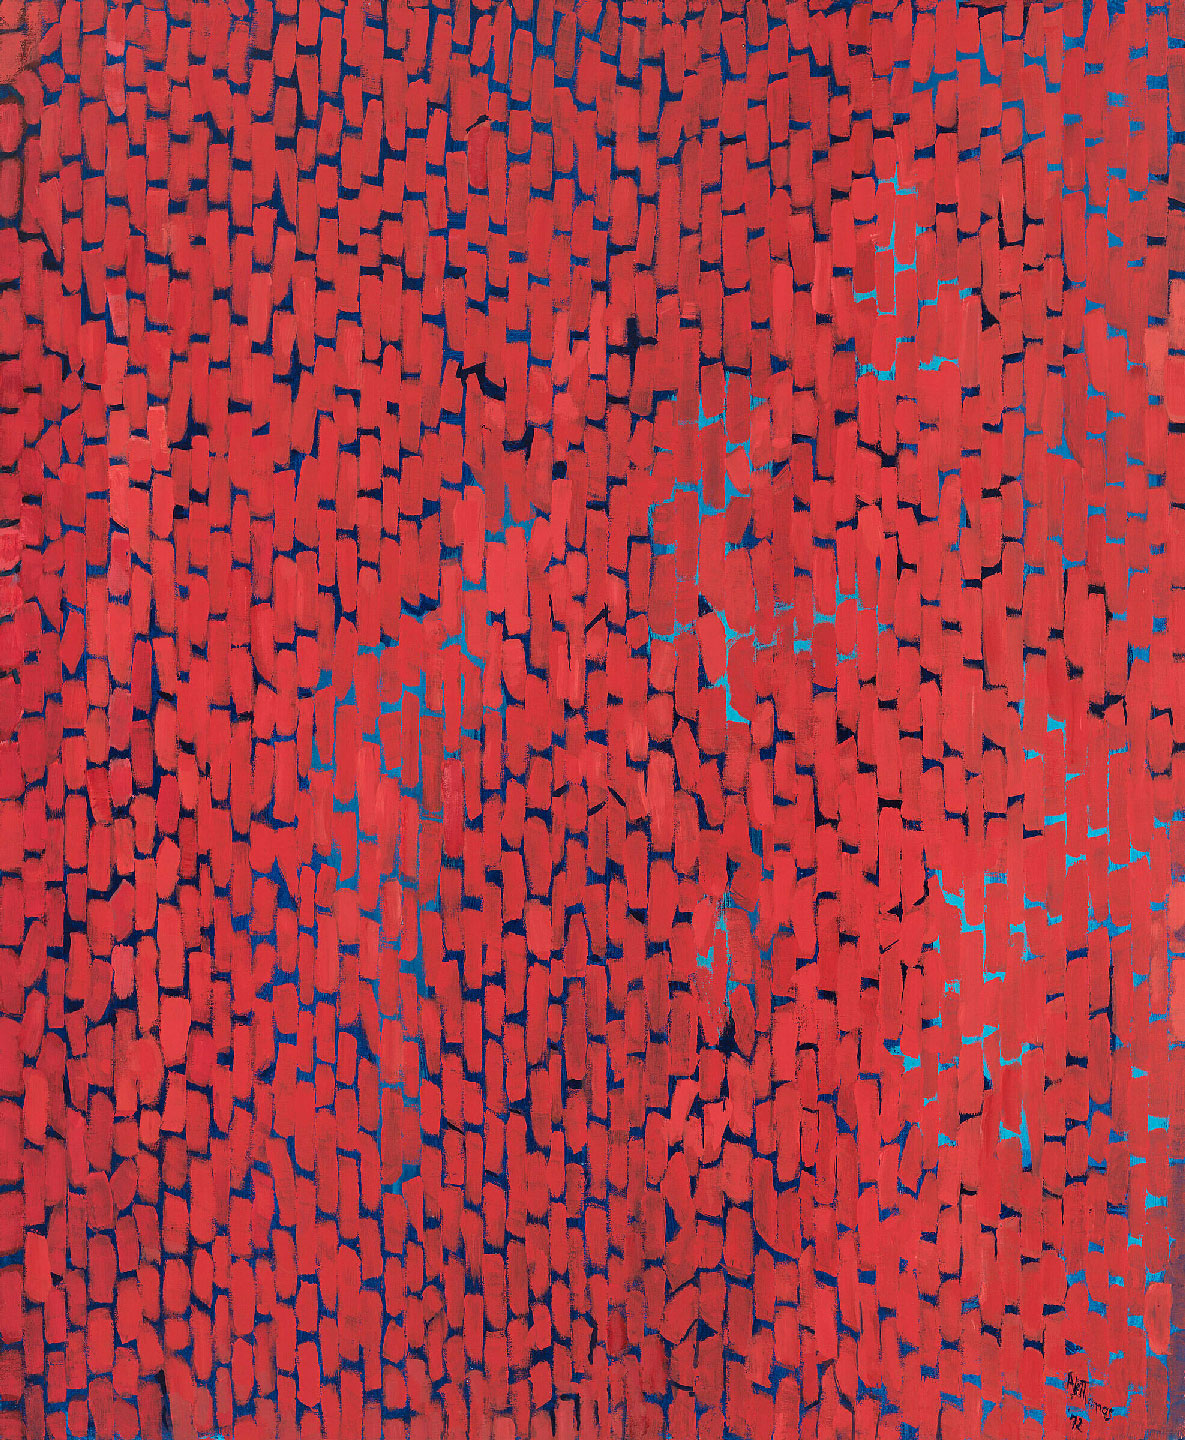 Alma Thomas, Mars Dust, 1972, acrylic on canvas, 69 1/4 × 57 1/8in. (175.9 × 145.1 cm)